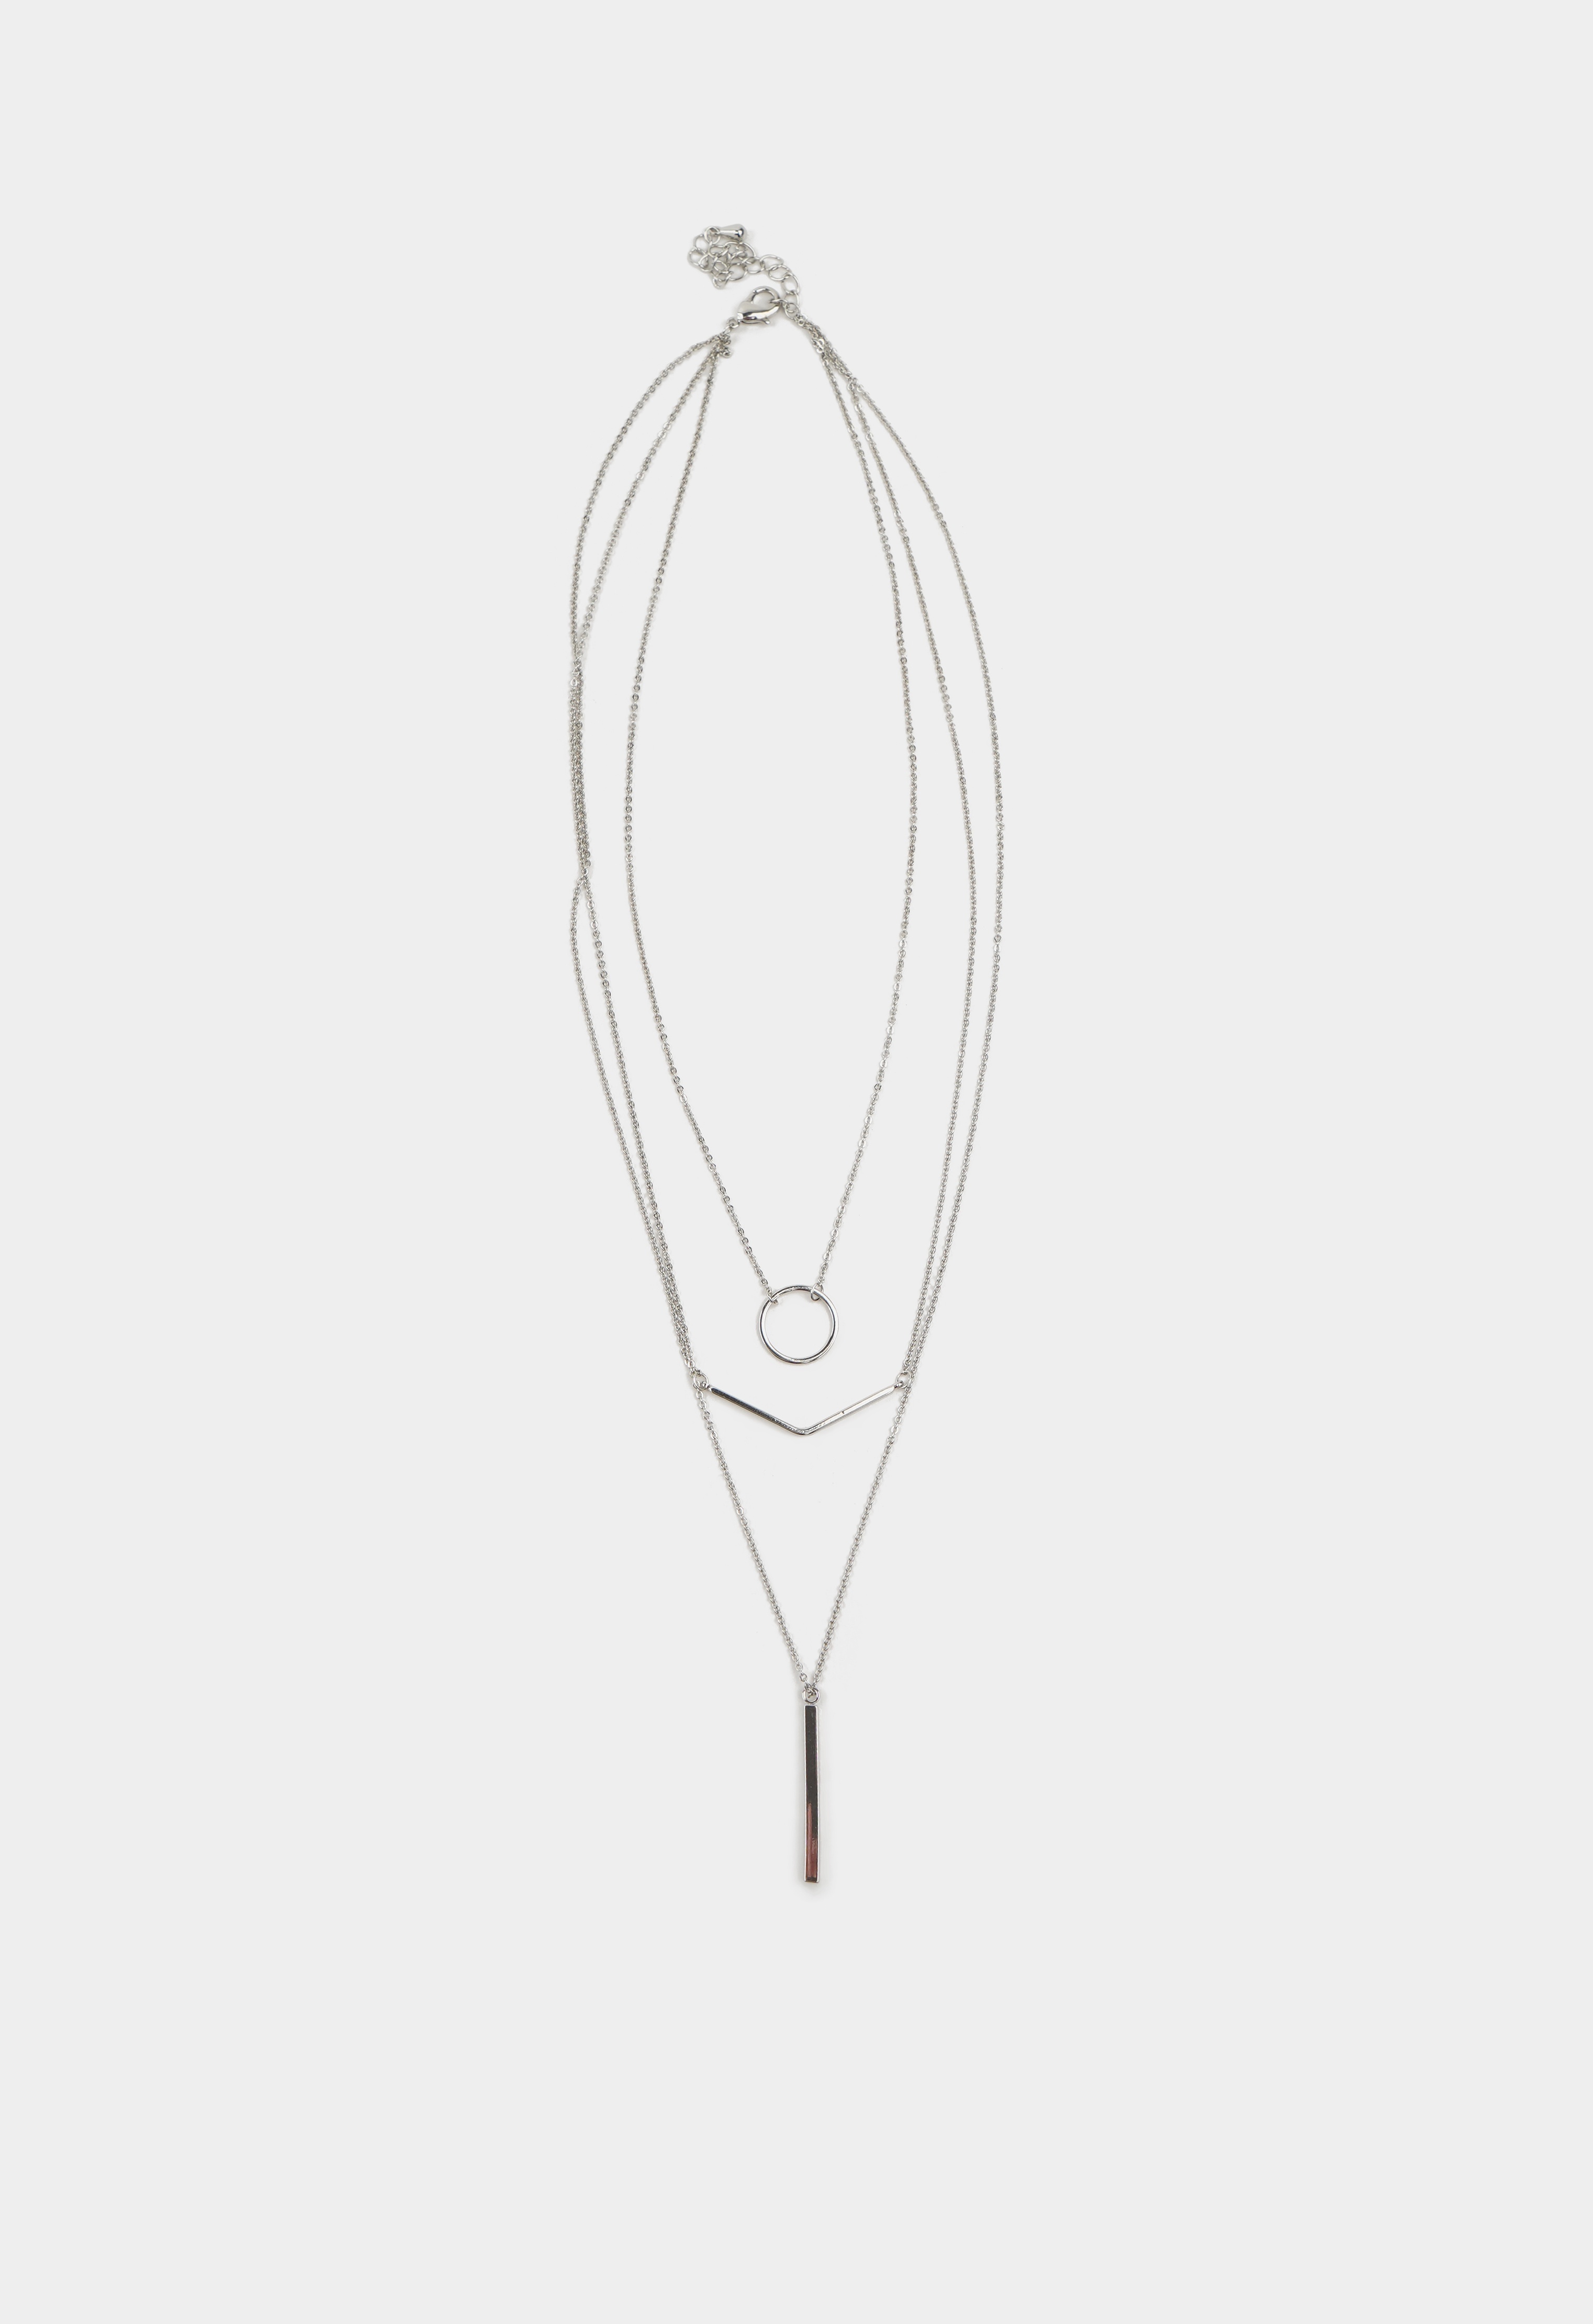 Ожерелье 19-0059 Ожерелье ожерелье колье наручники из нержавеющей стали женское ожерелье регулируемой длины короткое ожерелье колье мужское ожерелье